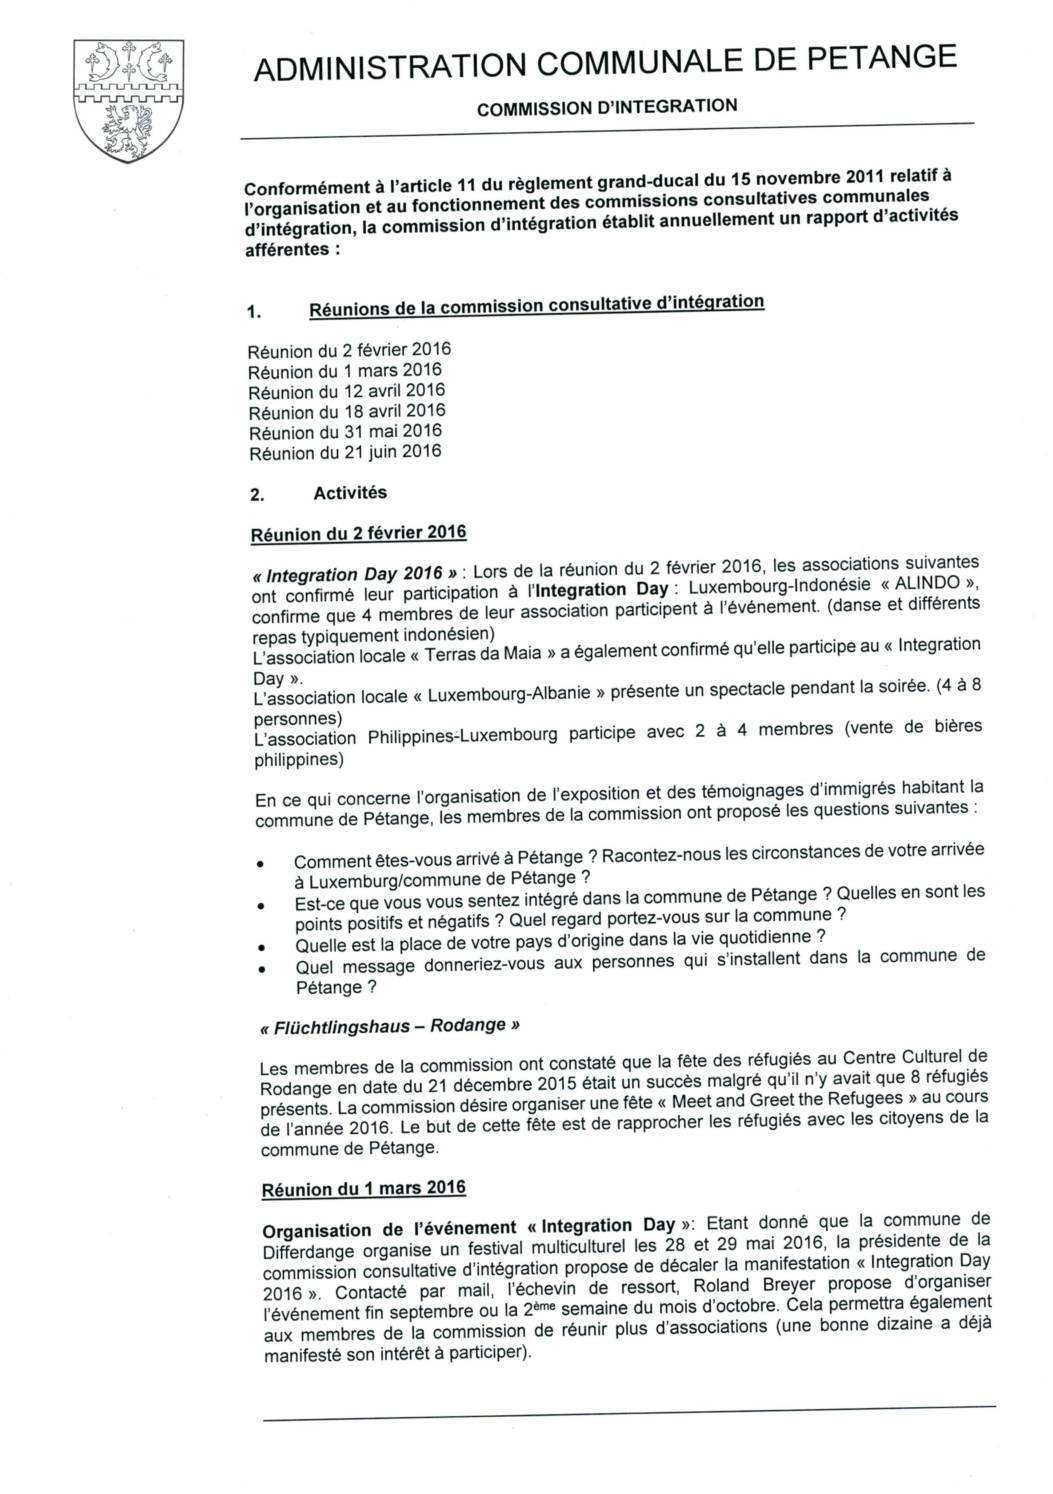 Commission d'intégration de la commune de Pétange - Rapport annuel 2016